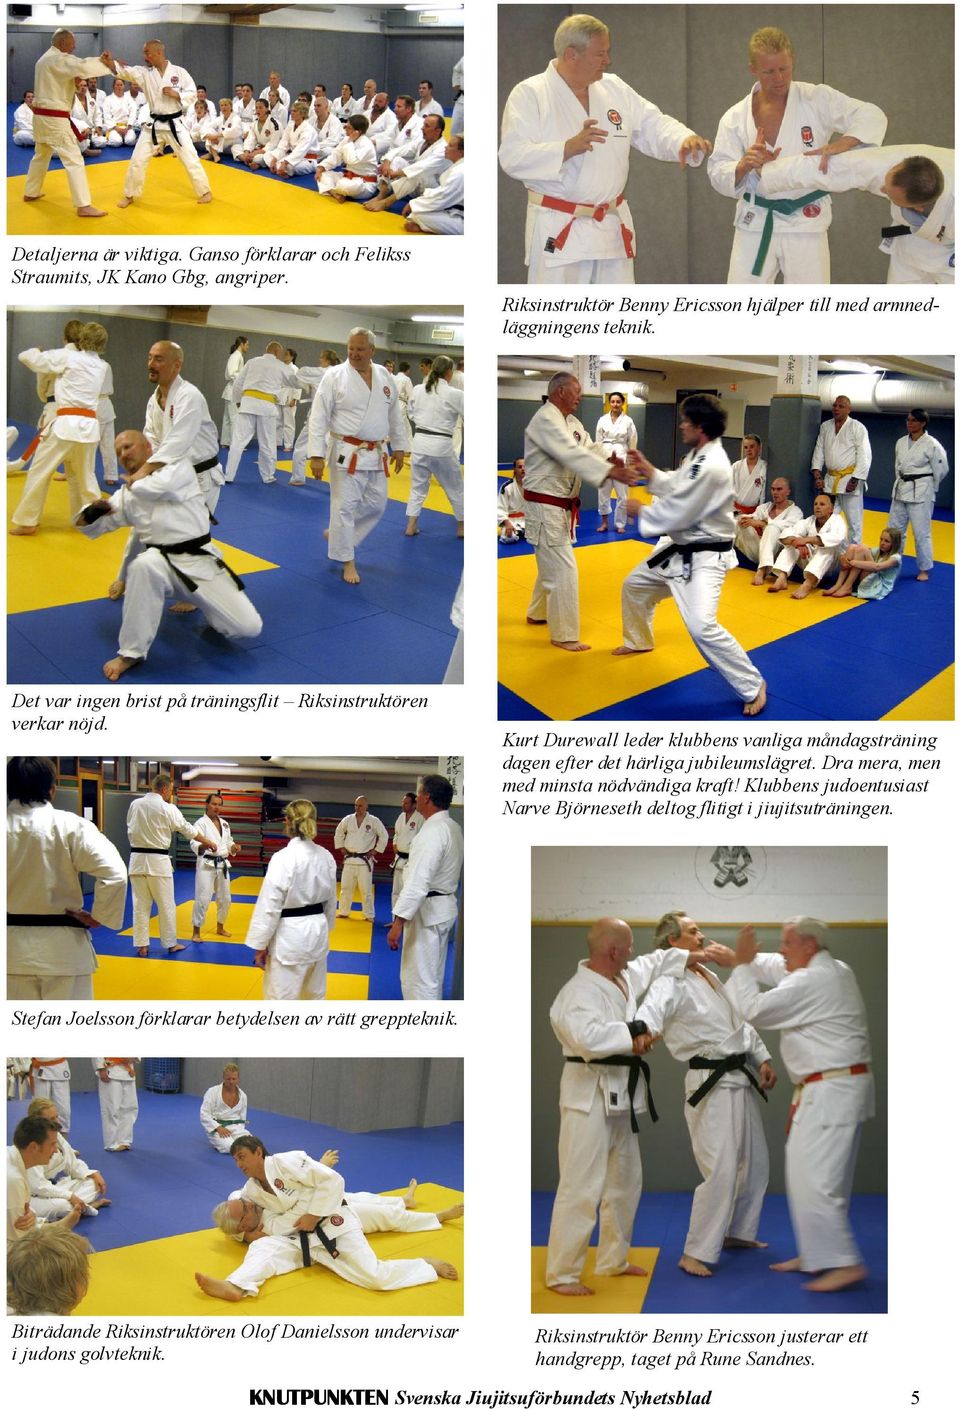 Dra mera, men med minsta nödvändiga kraft! Klubbens judoentusiast Narve Björneseth deltog flitigt i jiujitsuträningen.